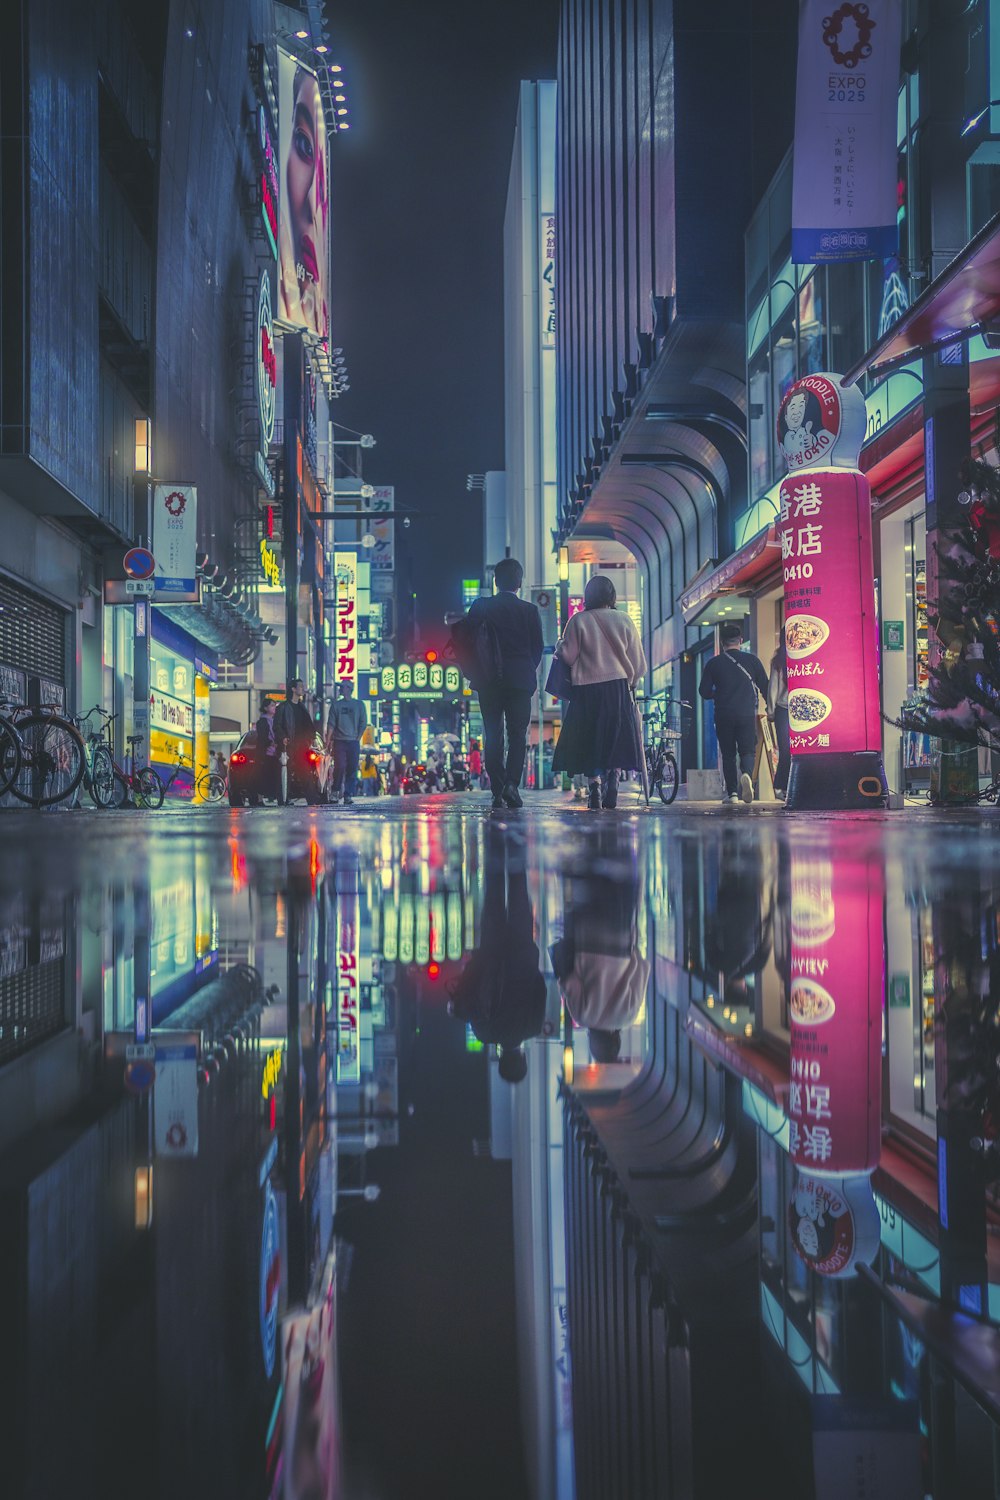 people walking in a city